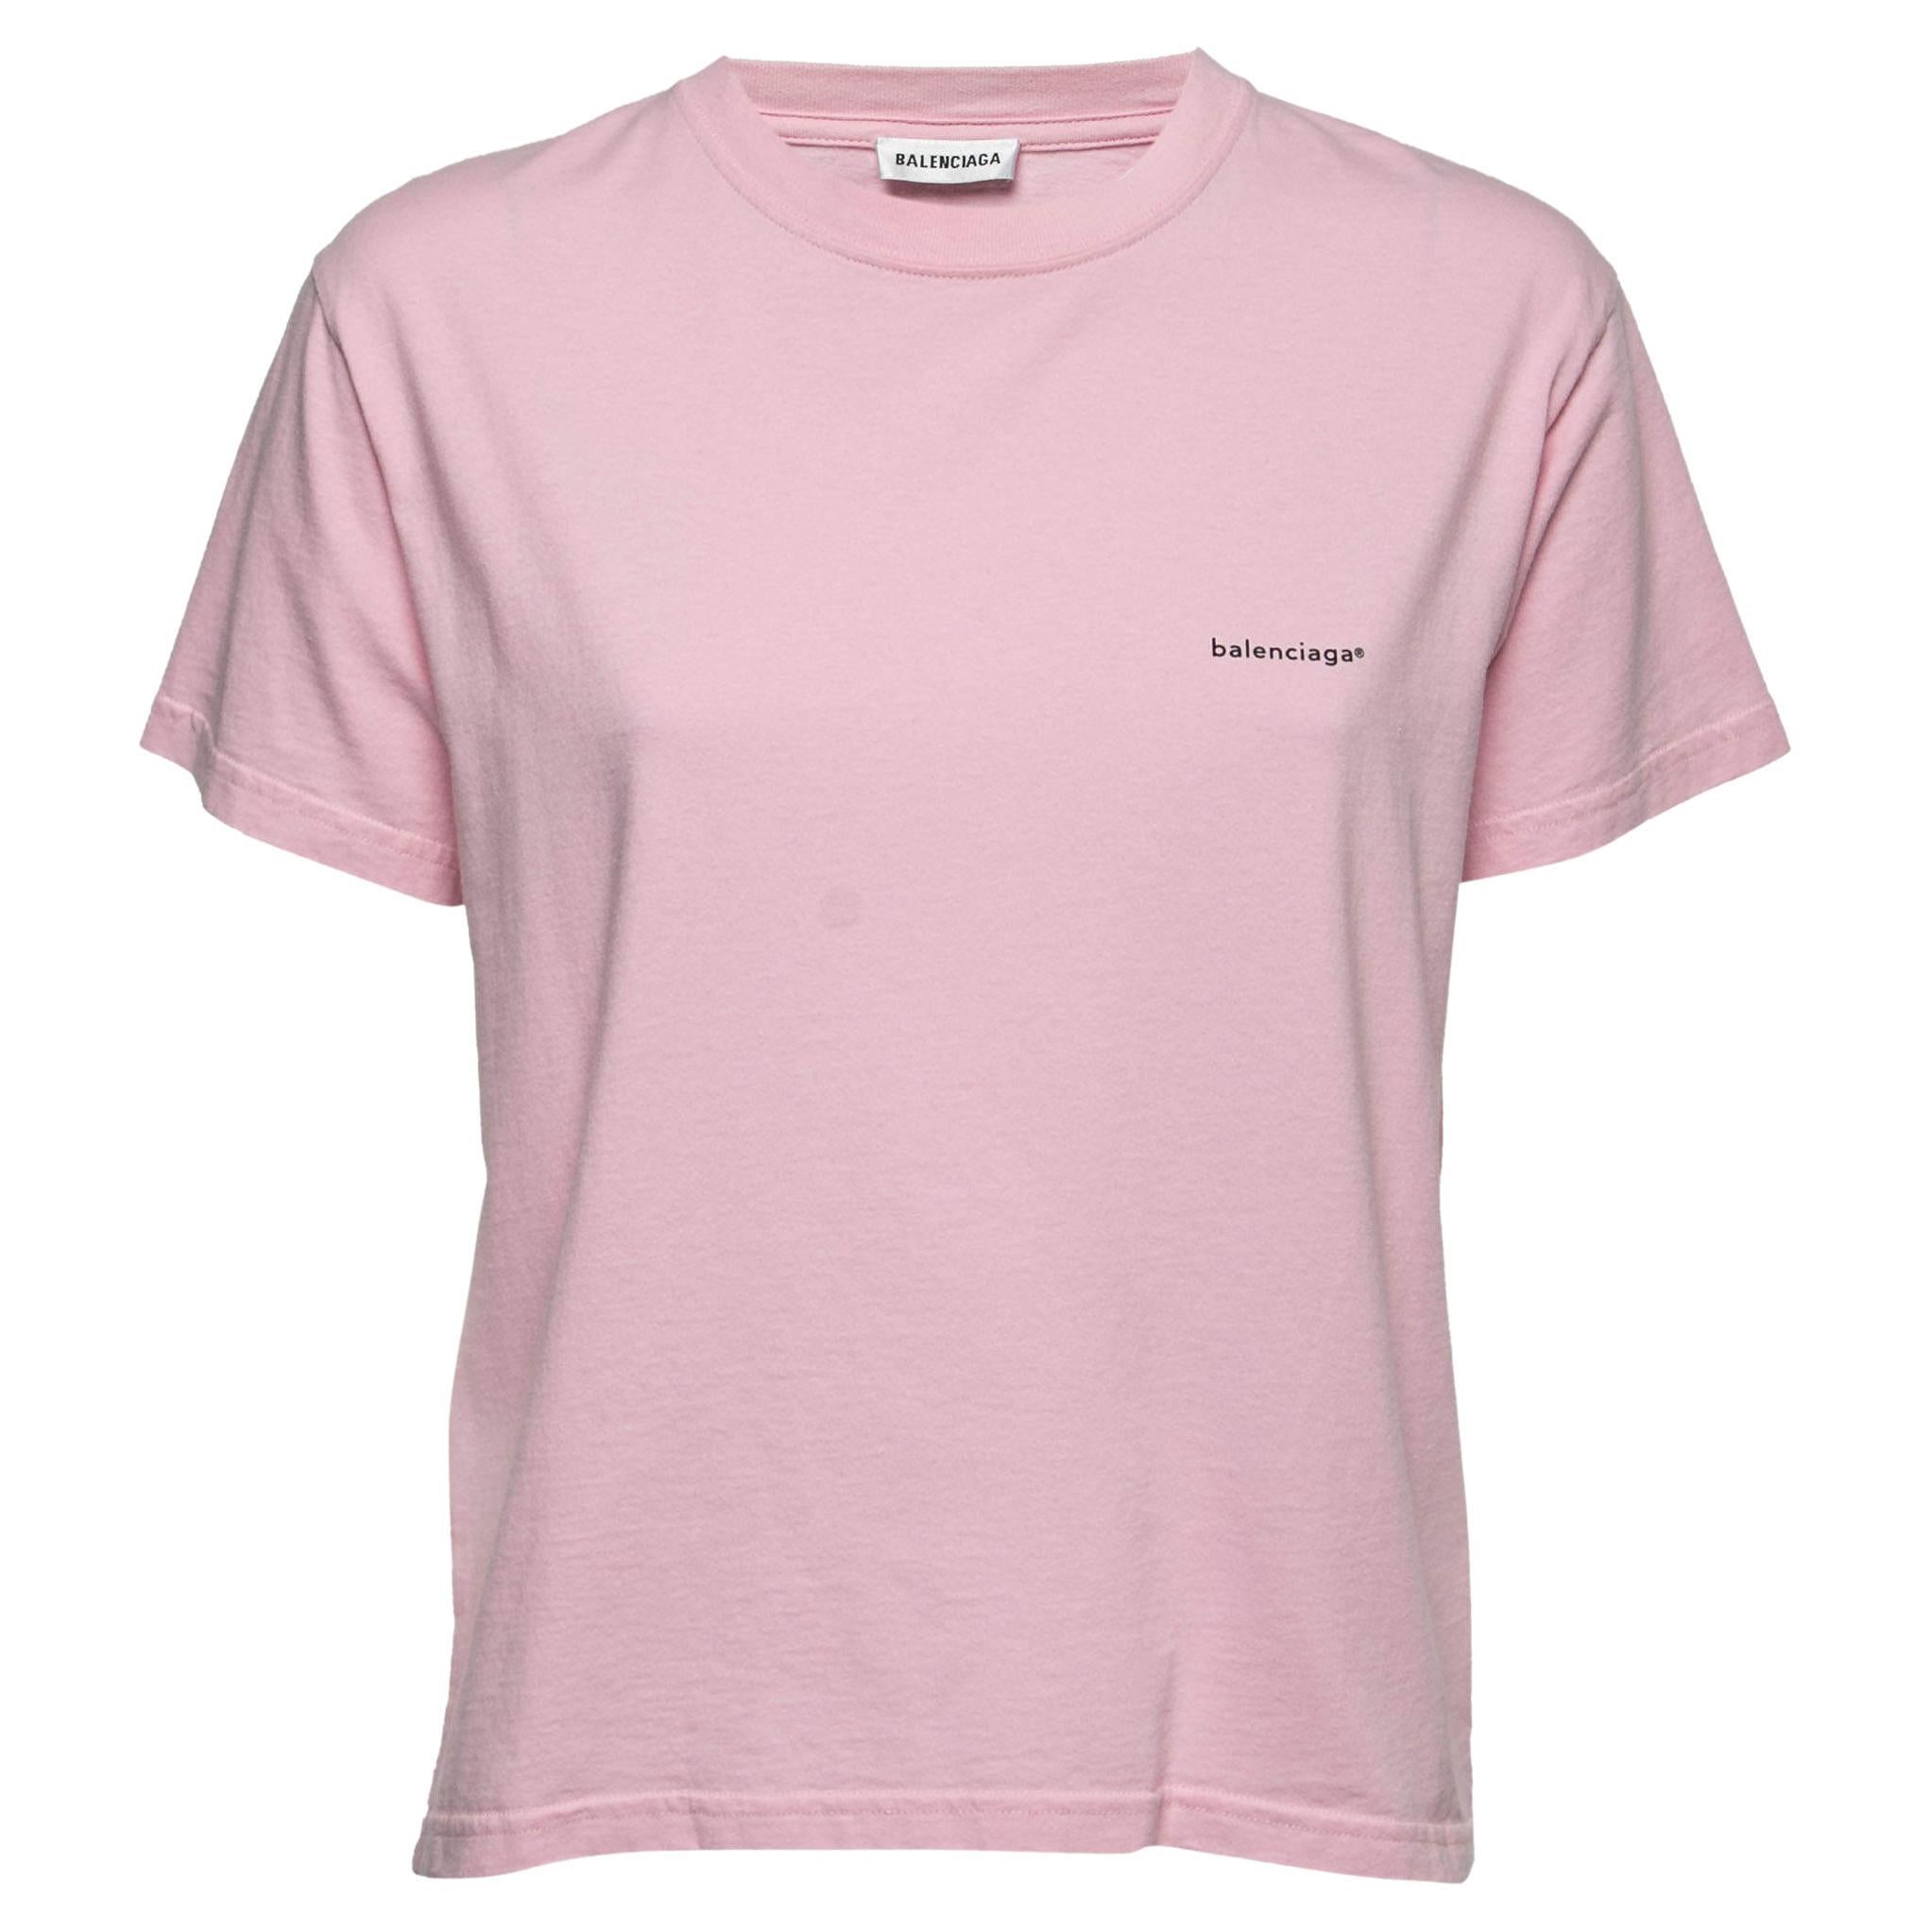 T-Shirt von Balenciaga aus rosa Baumwolle mit Logo, L